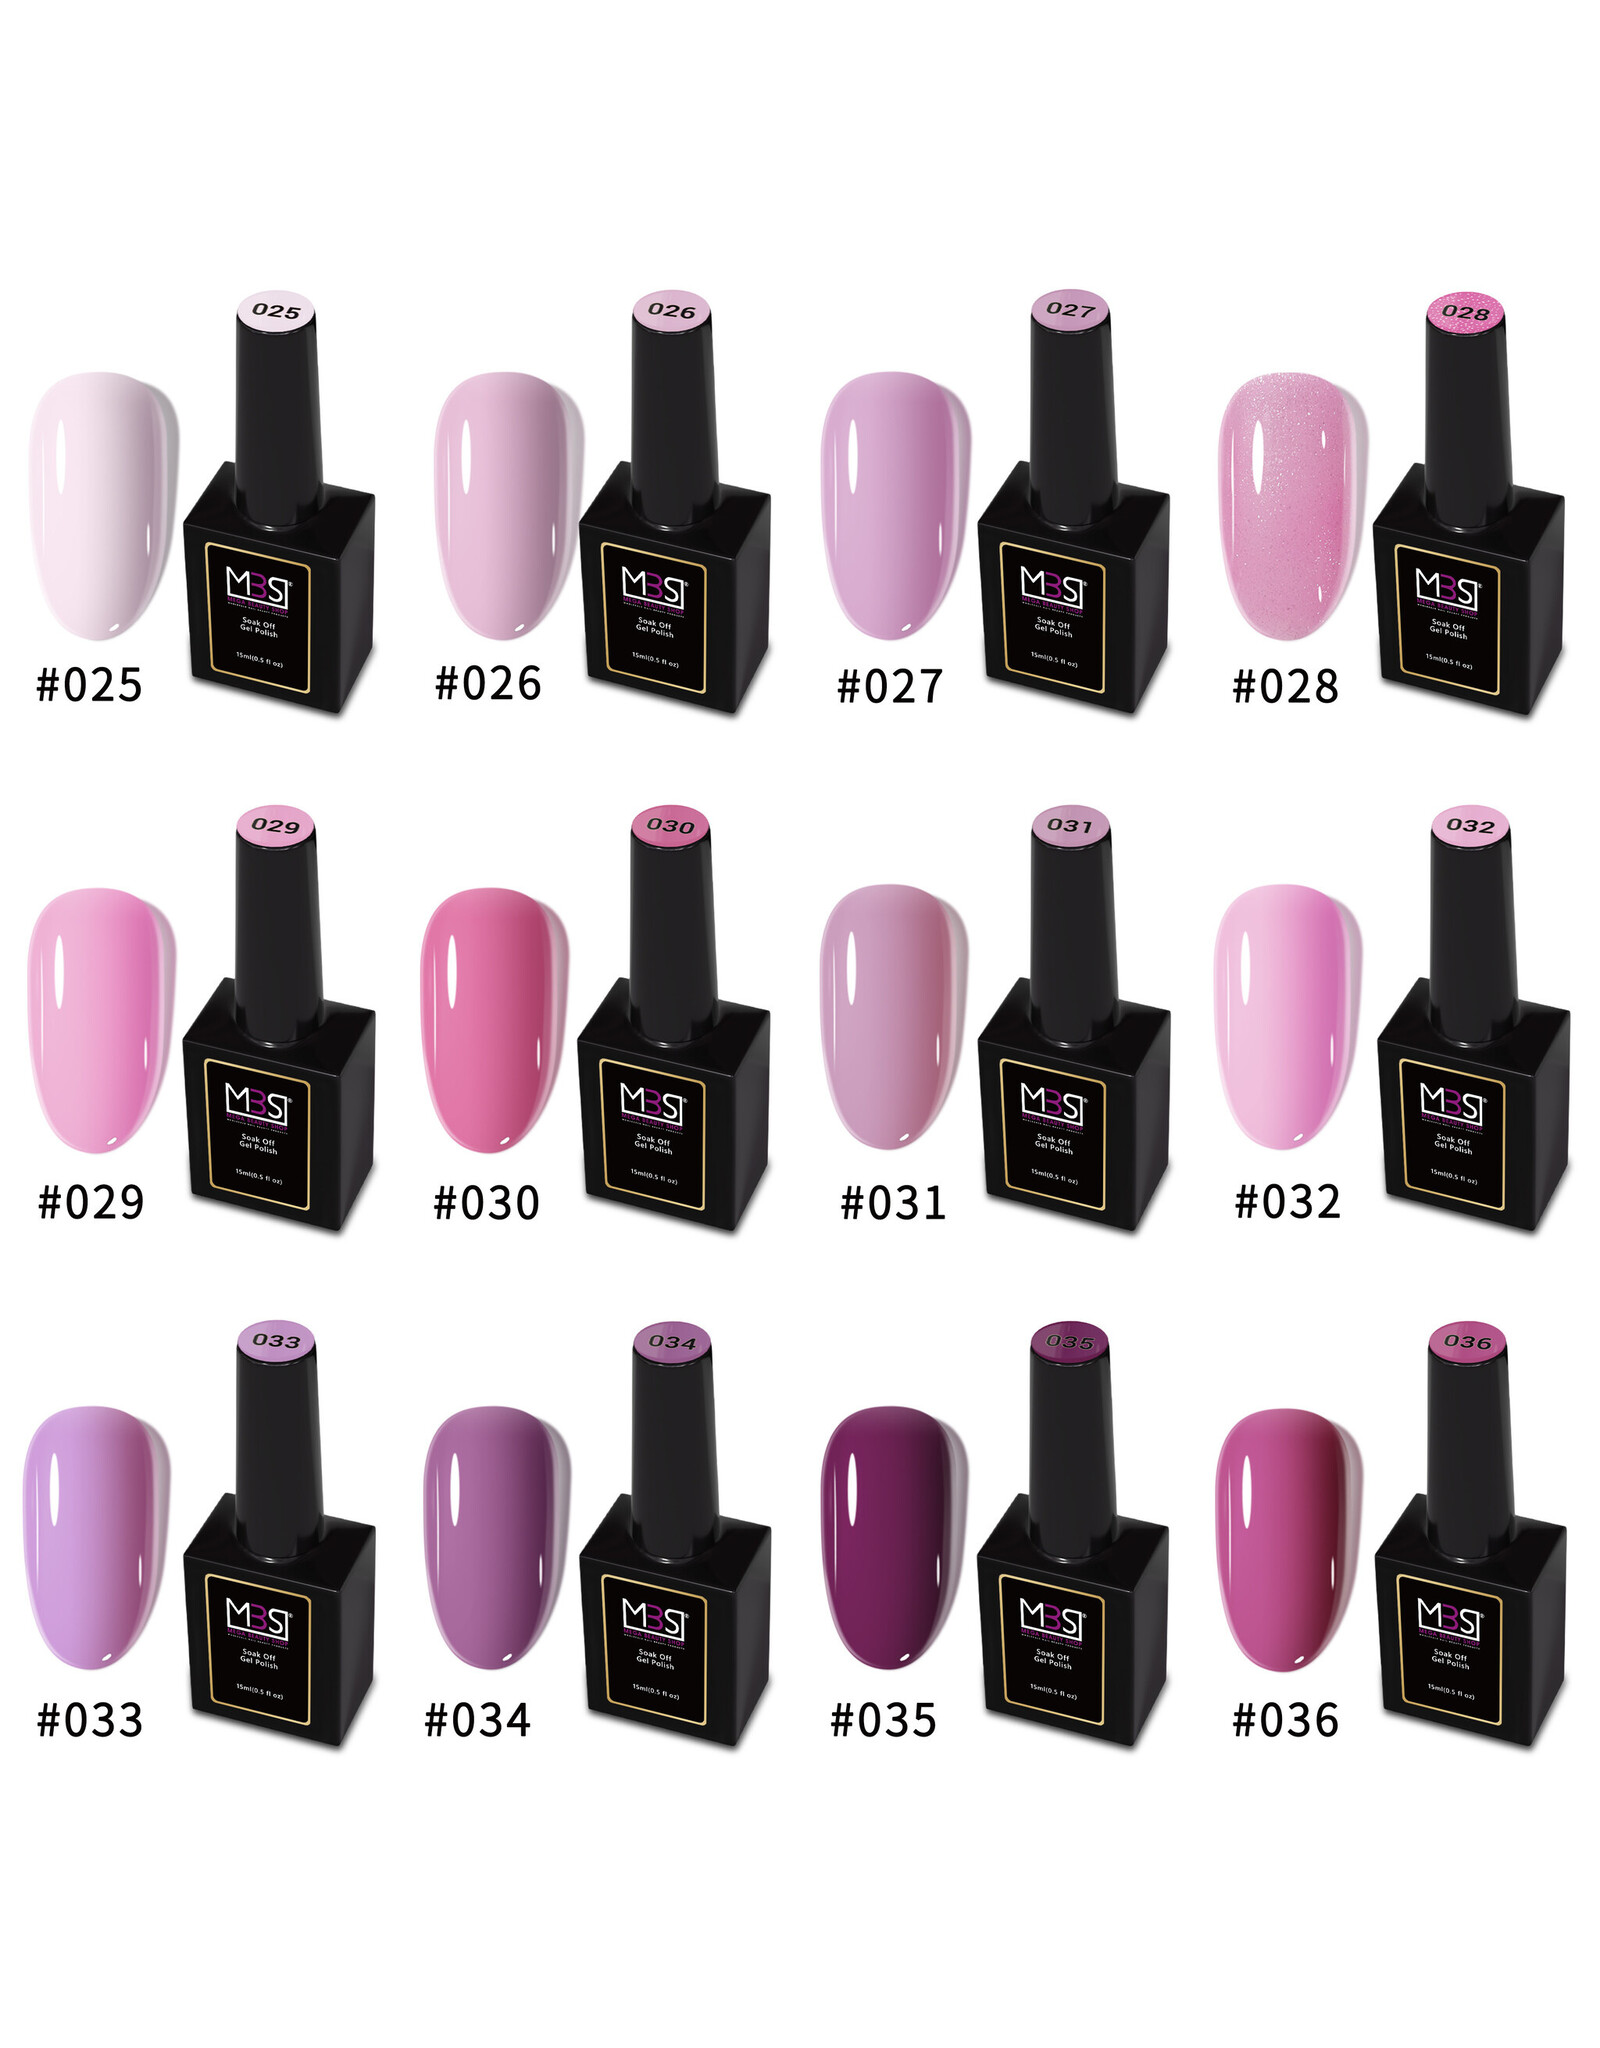 Mega Beauty Shop® Gel polish PRO 15ml.  (032)